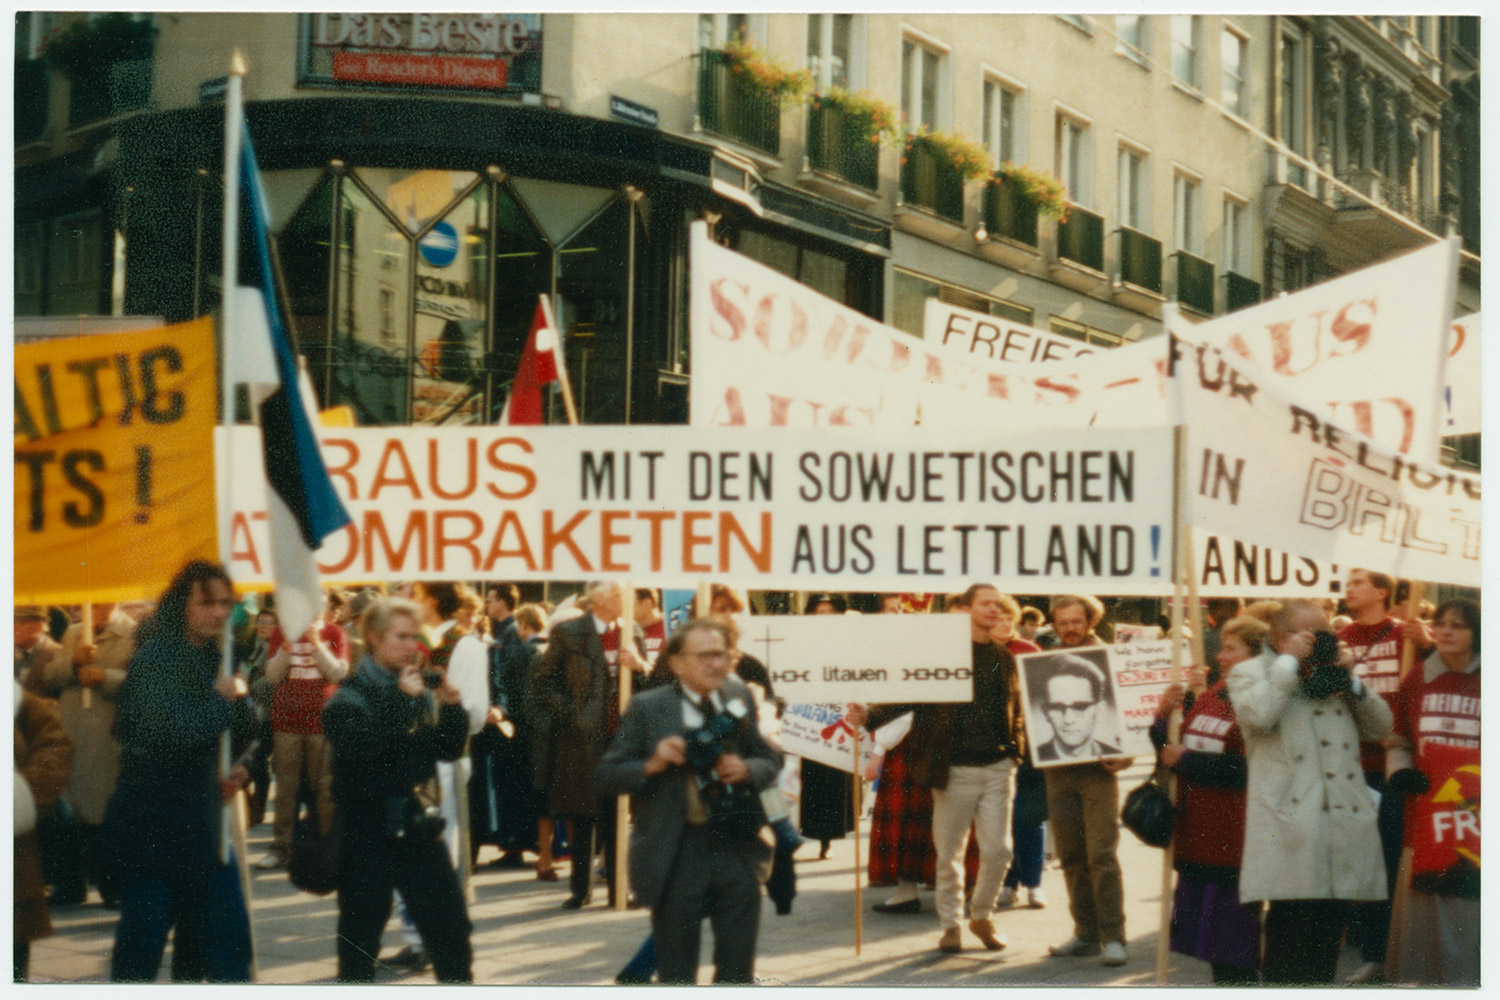 1986 m. Viena, Austrija. Protesto demonstracija prieš Baltijos šalių okupaciją Vienoje vykstant ESBO konferencijai. Plakatai, reikalaujantys išvesti Sovietų kariuomenę iš Baltijos šalių. LCVA